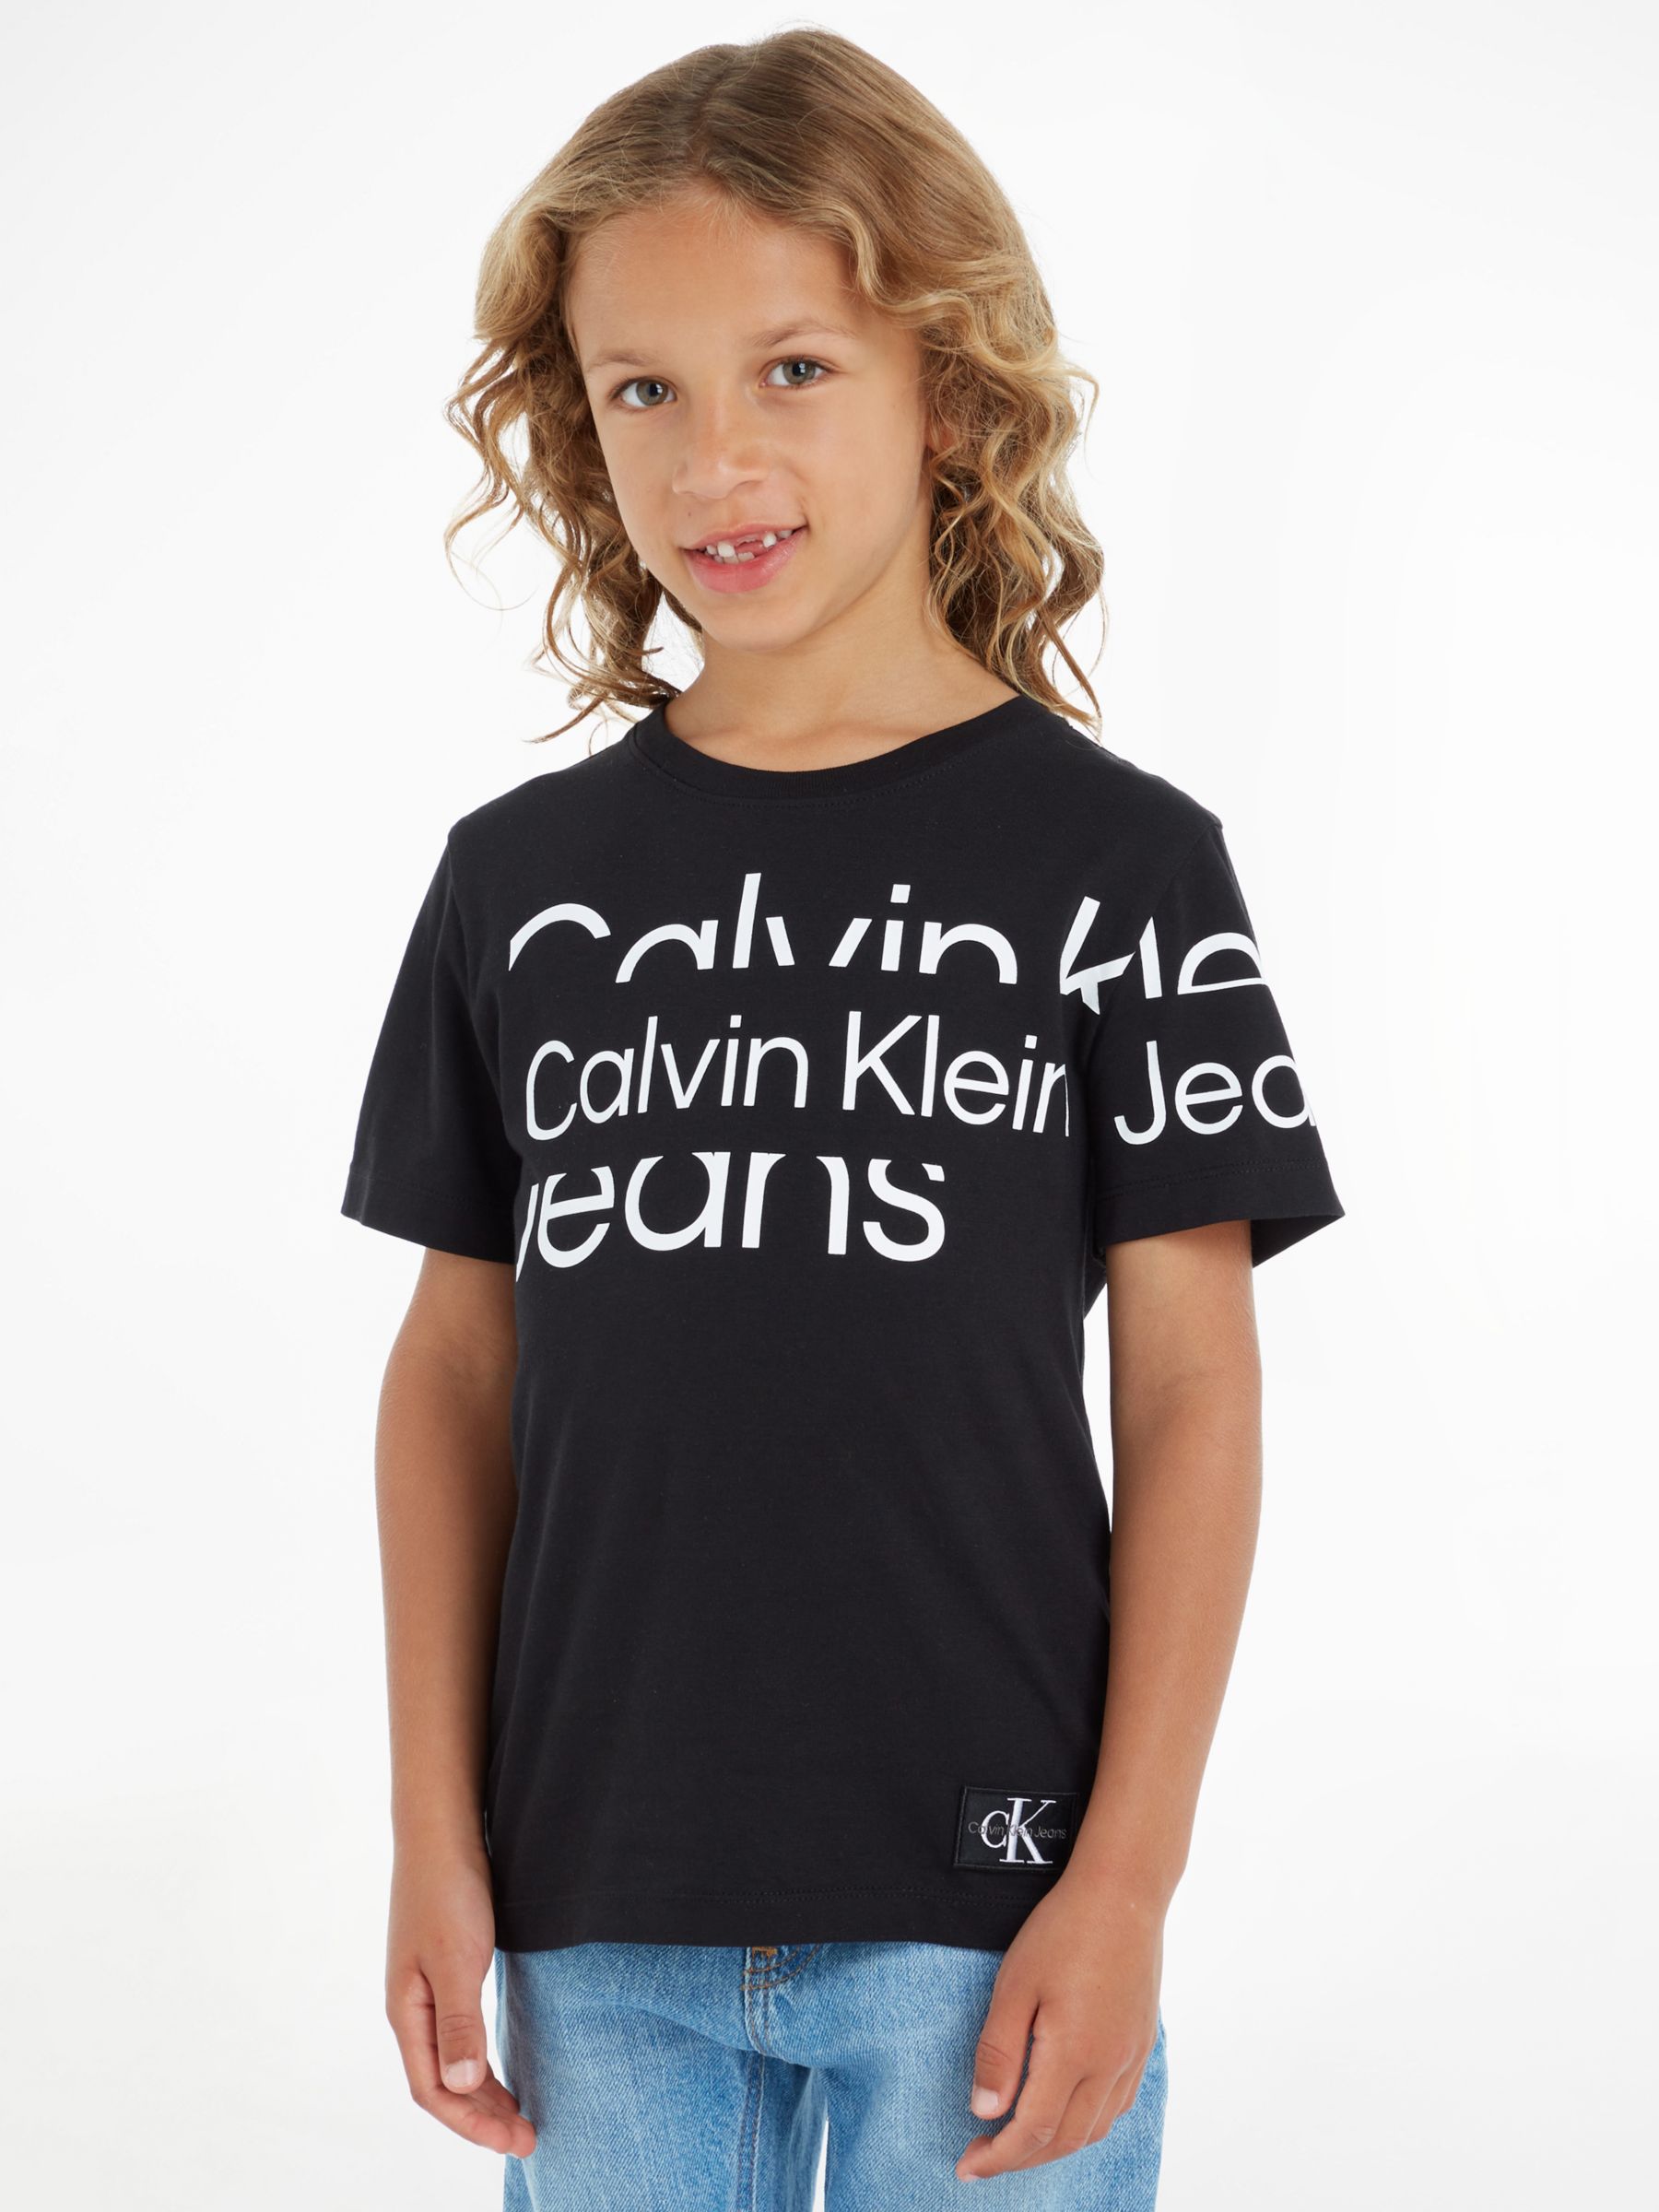 Calvin Klein Kids' Blown T-Shirt, Black at John Lewis & Partners